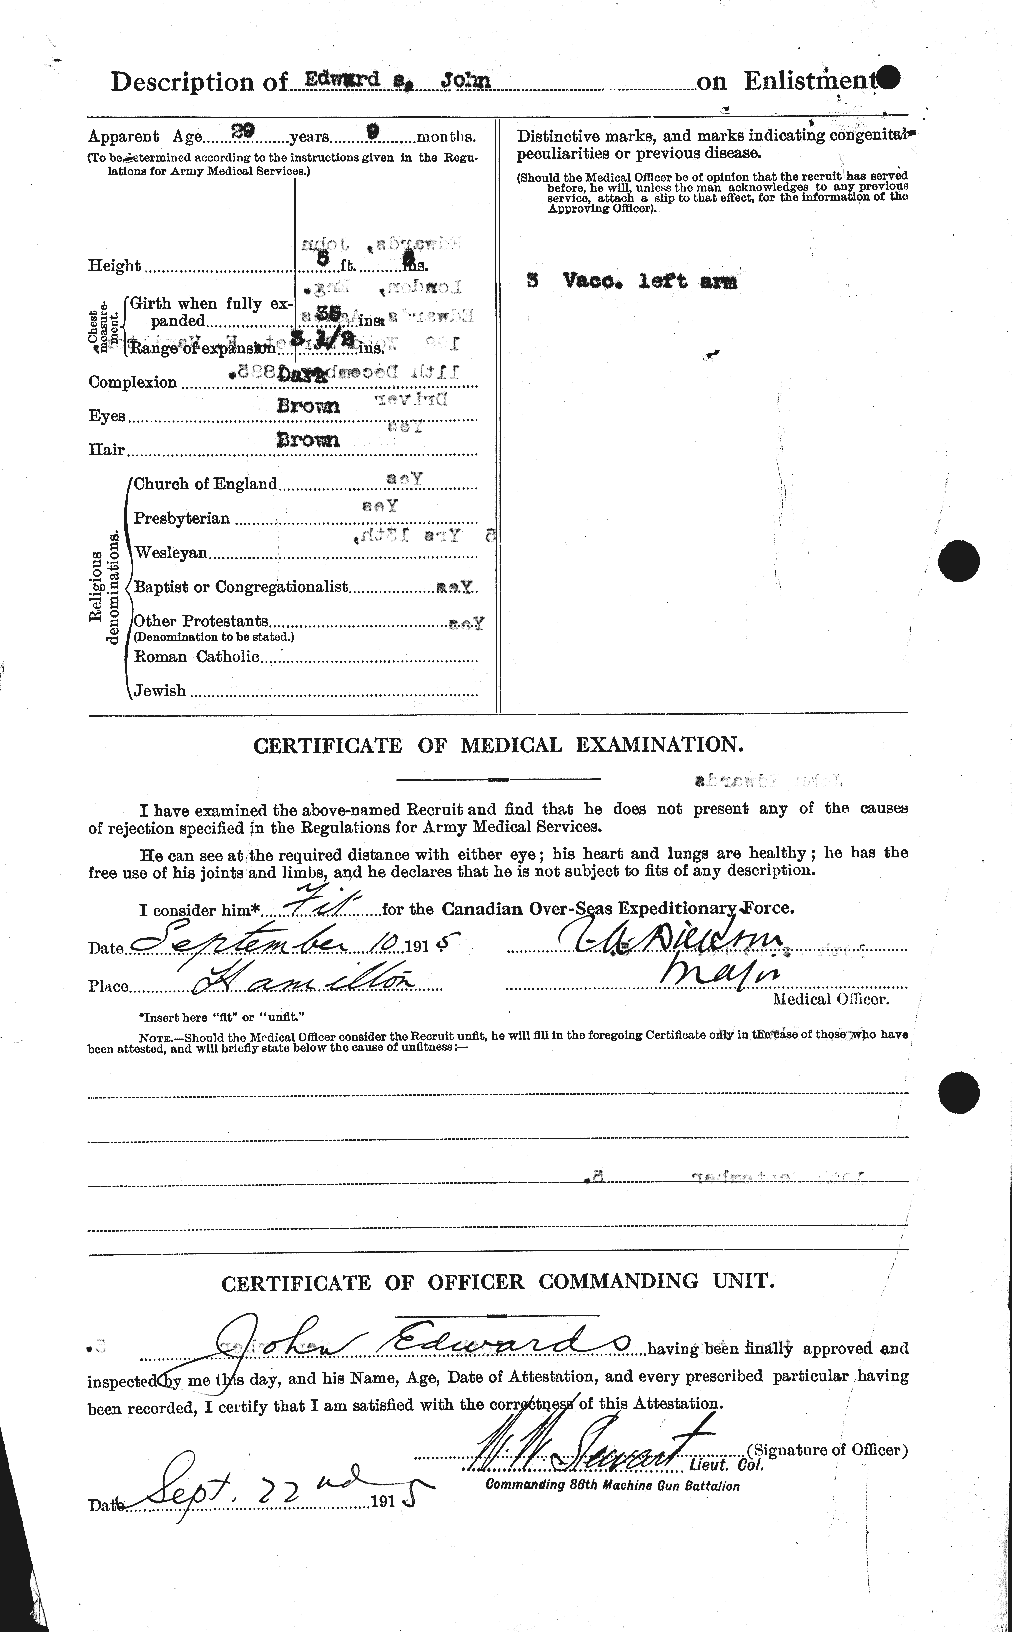 Dossiers du Personnel de la Première Guerre mondiale - CEC 309839b